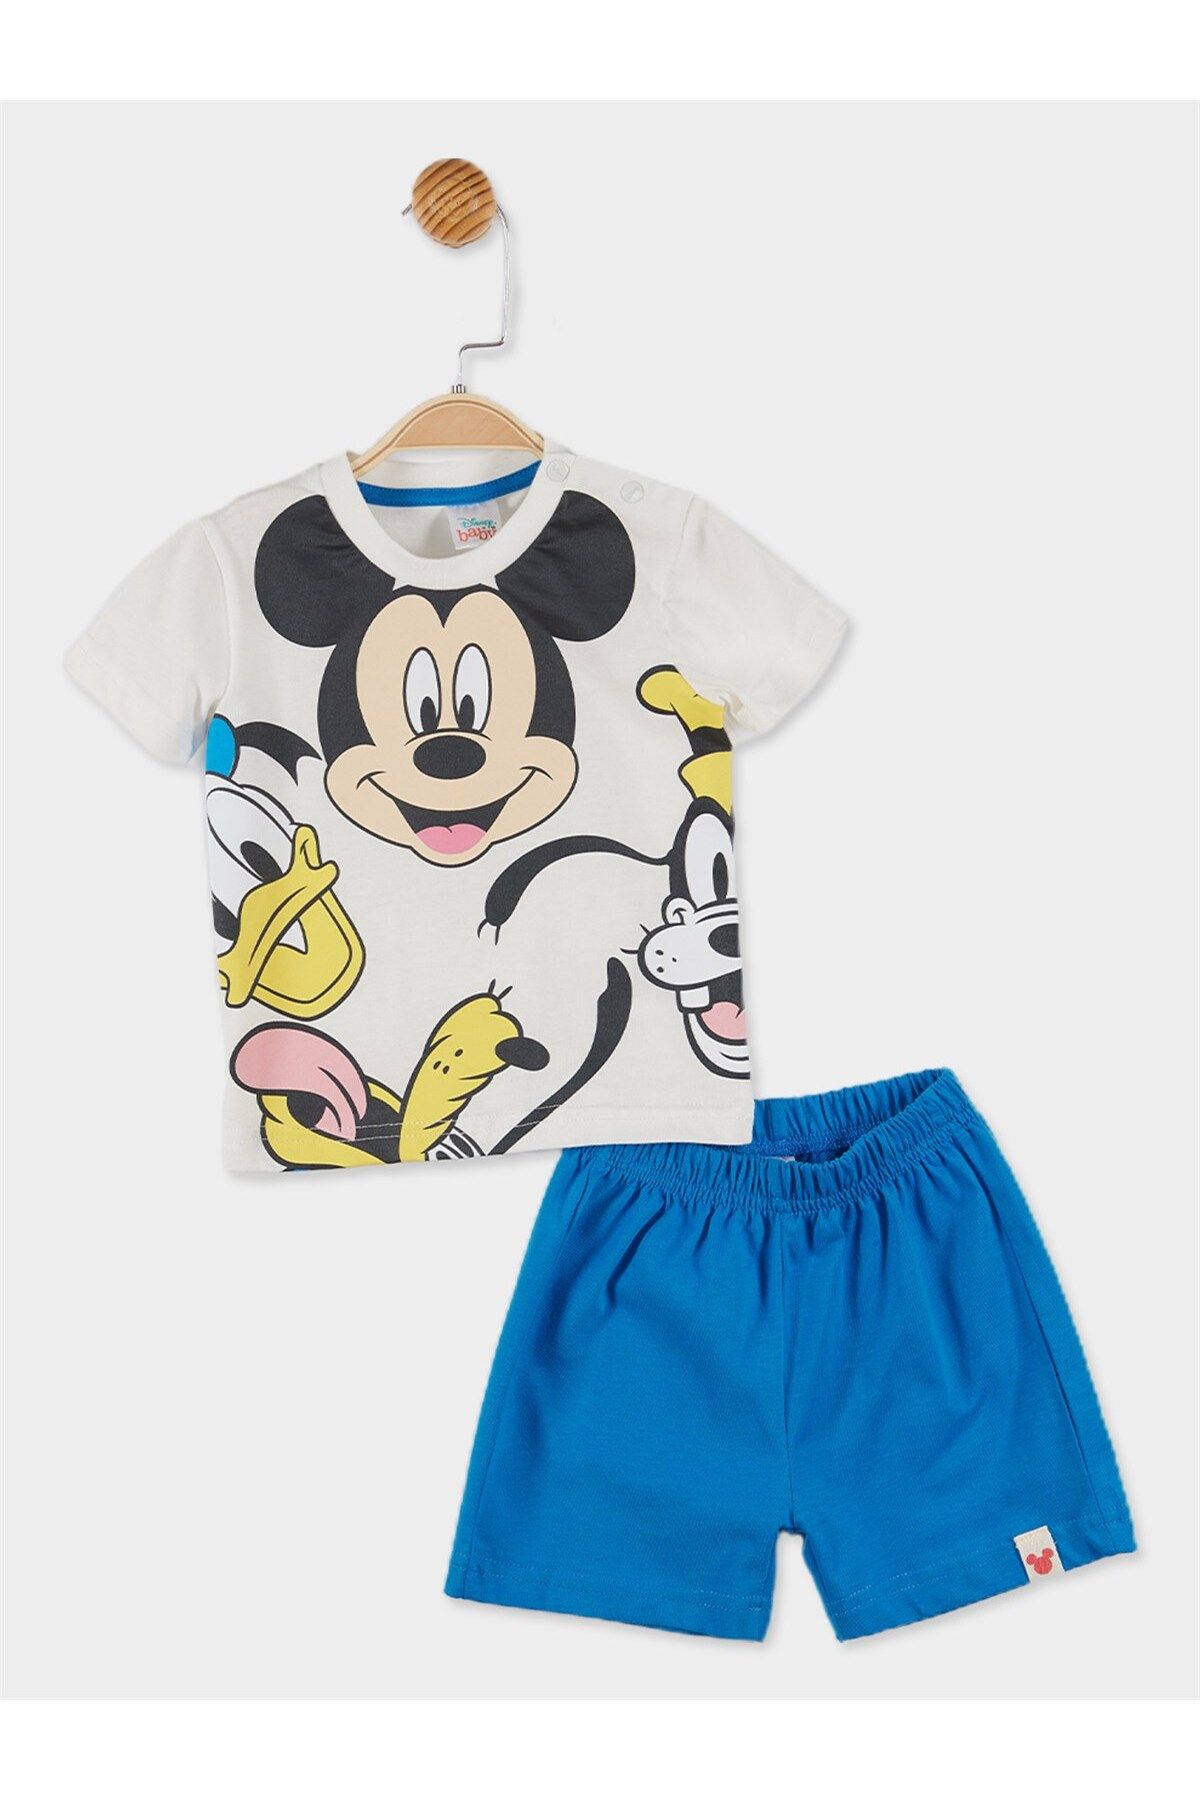 Mickey Mouse Disney Lisanslı Erkek Bebek Tişört Ve Şort 2'li Takım 20888